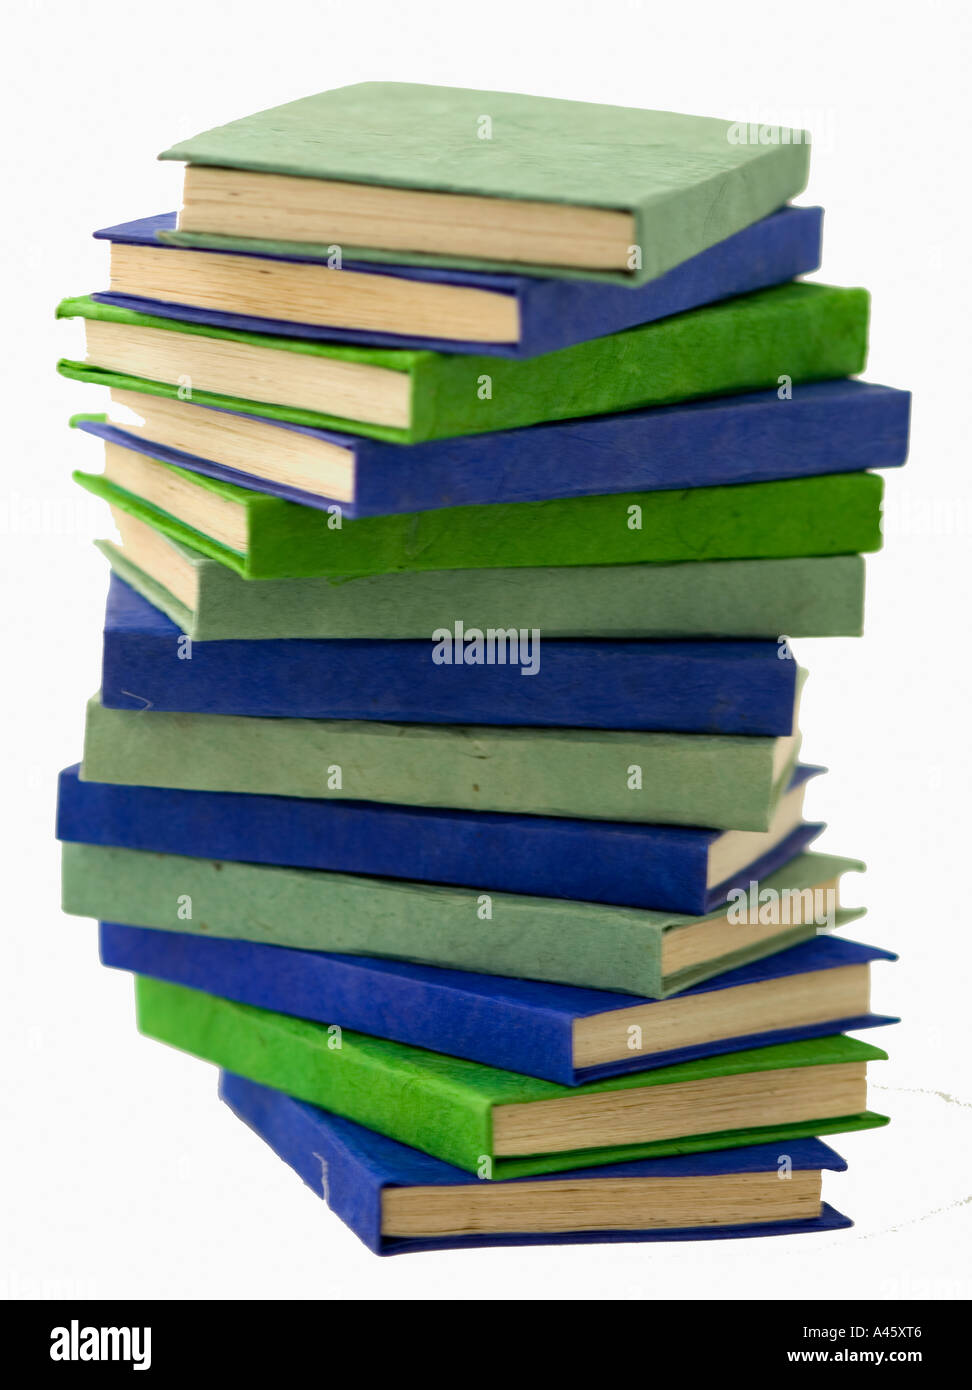 Des livrets verts et bleus disposés en une spirale Banque D'Images